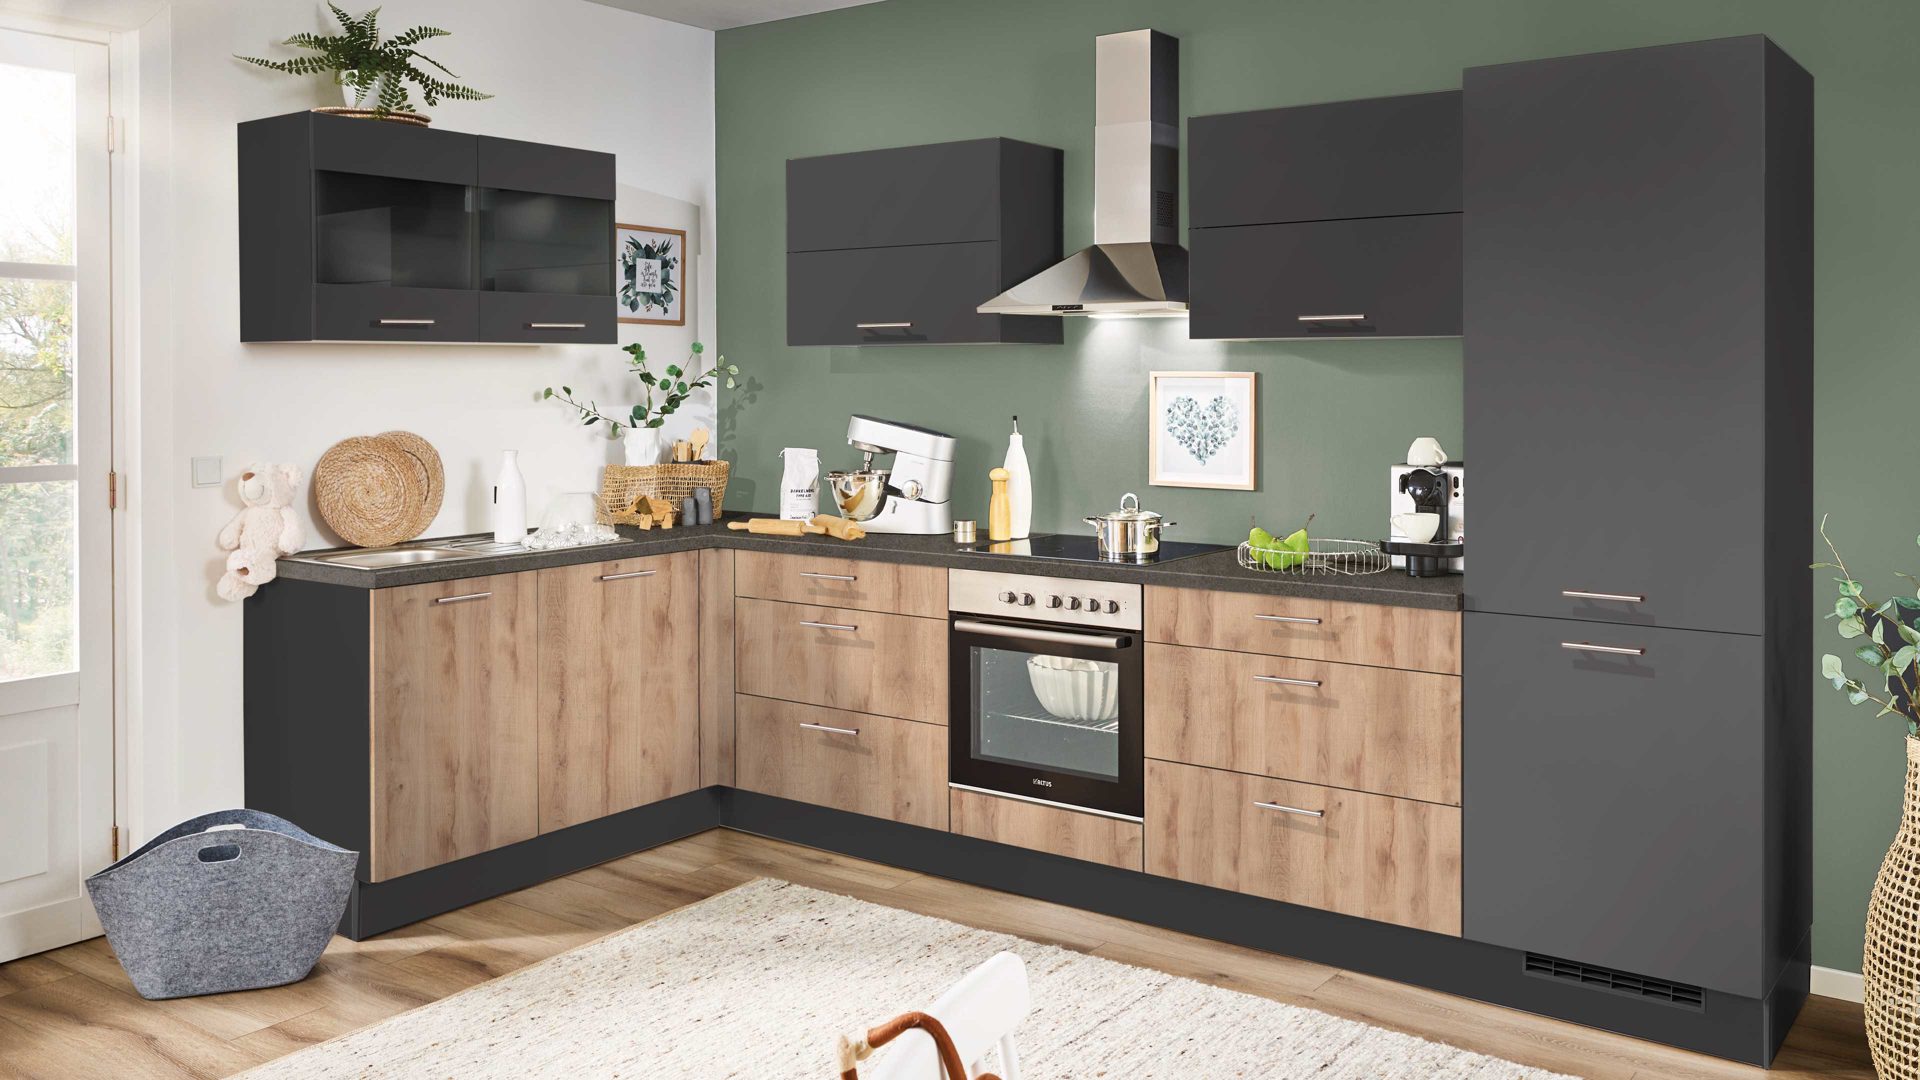 Einbauküche Pino küchen aus Holz in Dunkelgrau pino Einbauküche inklusive Einbaugeräte Honig Eiche & Grafit - Stellfläche ca. 175 x 347 cm